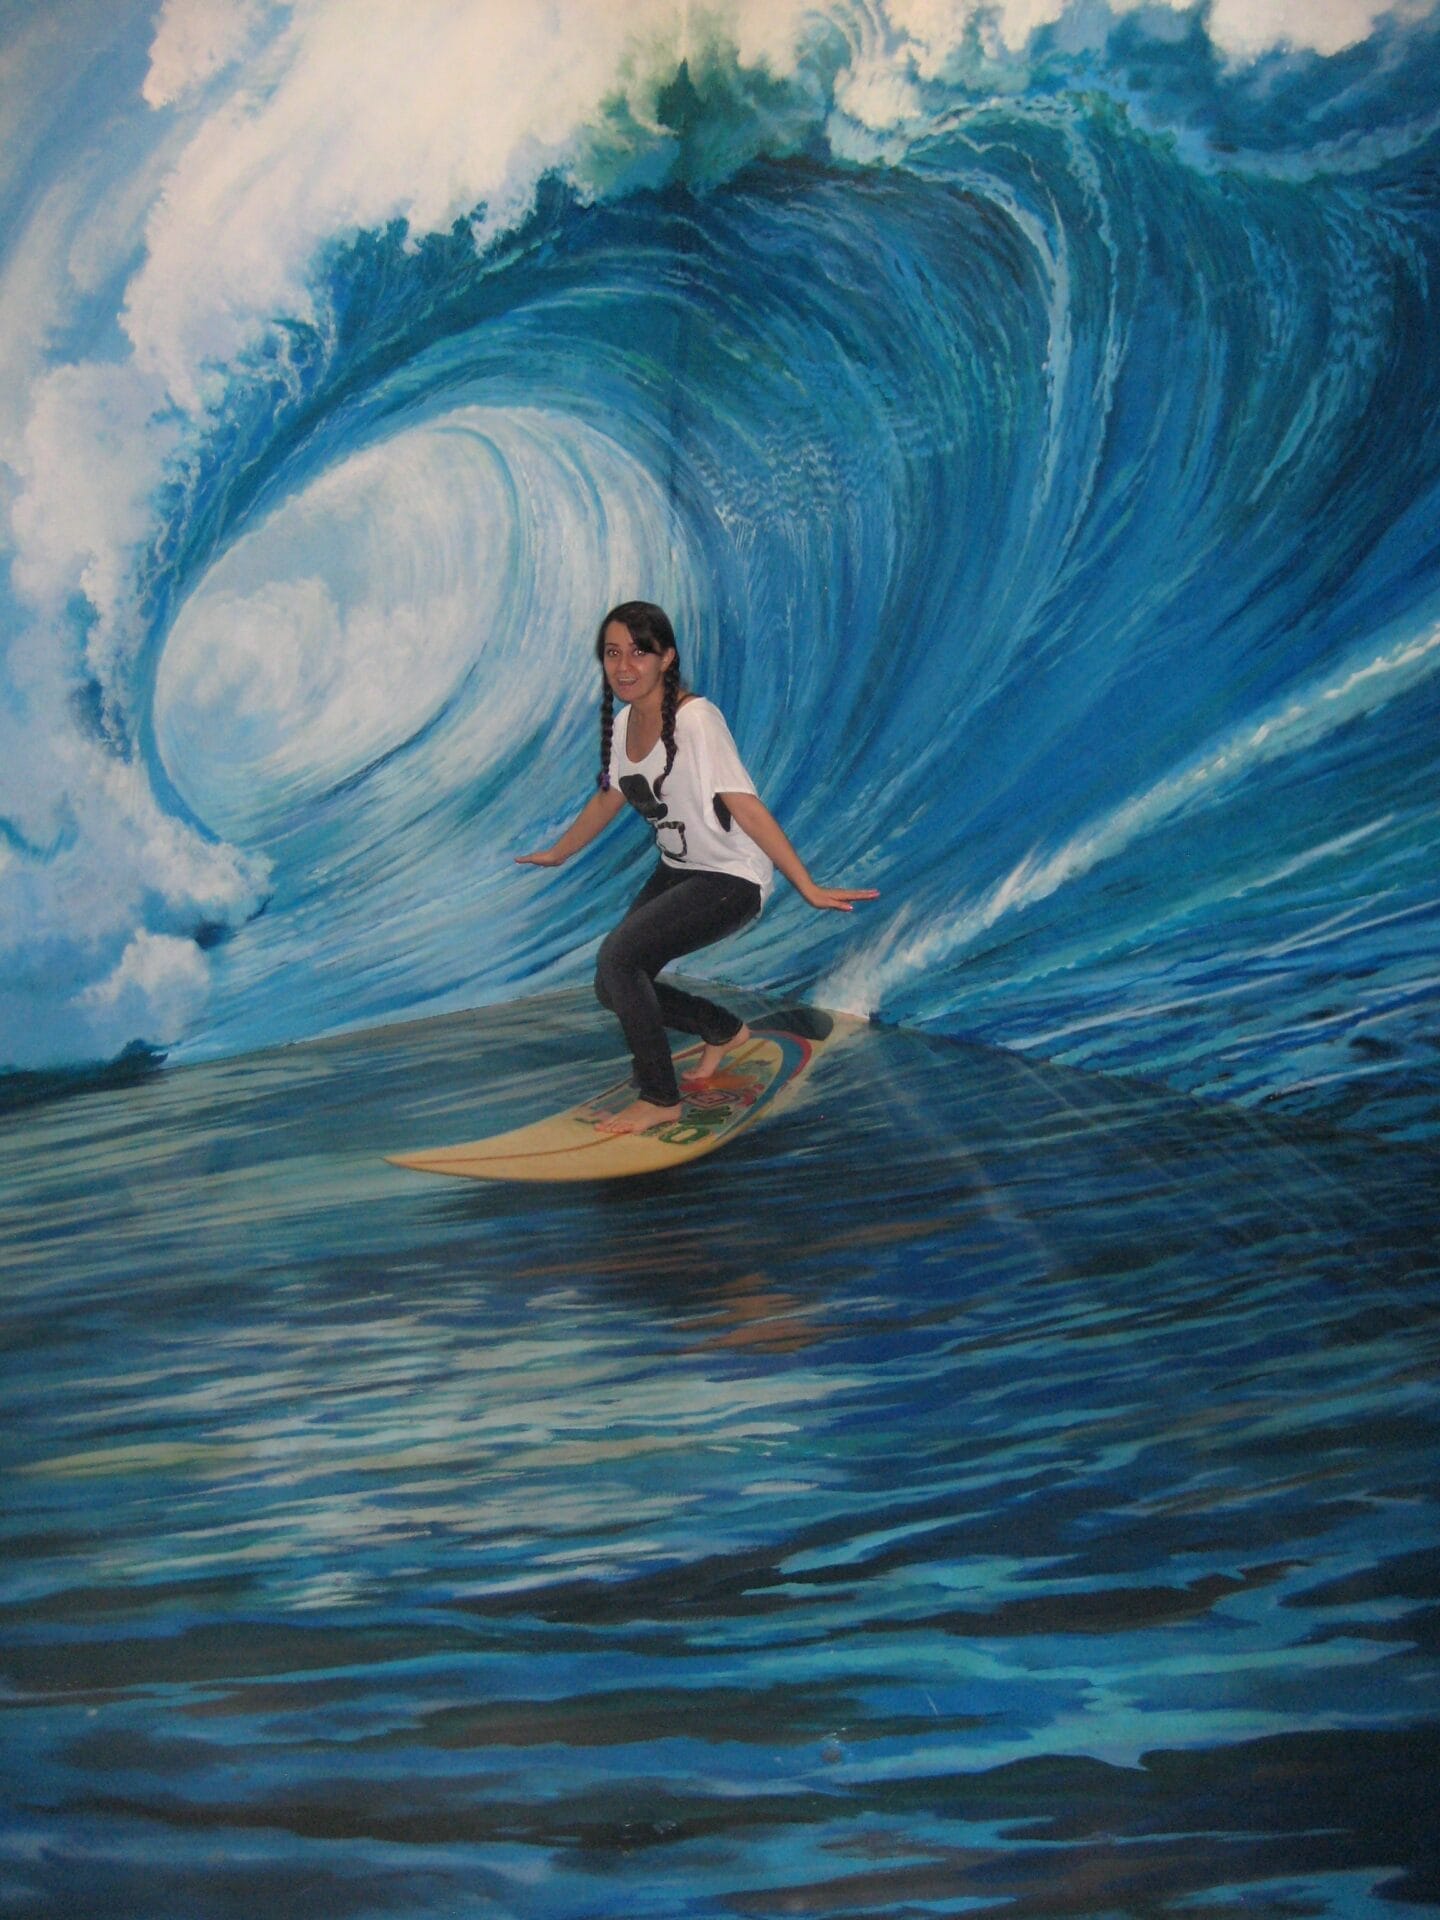 Surfing in 3D Art